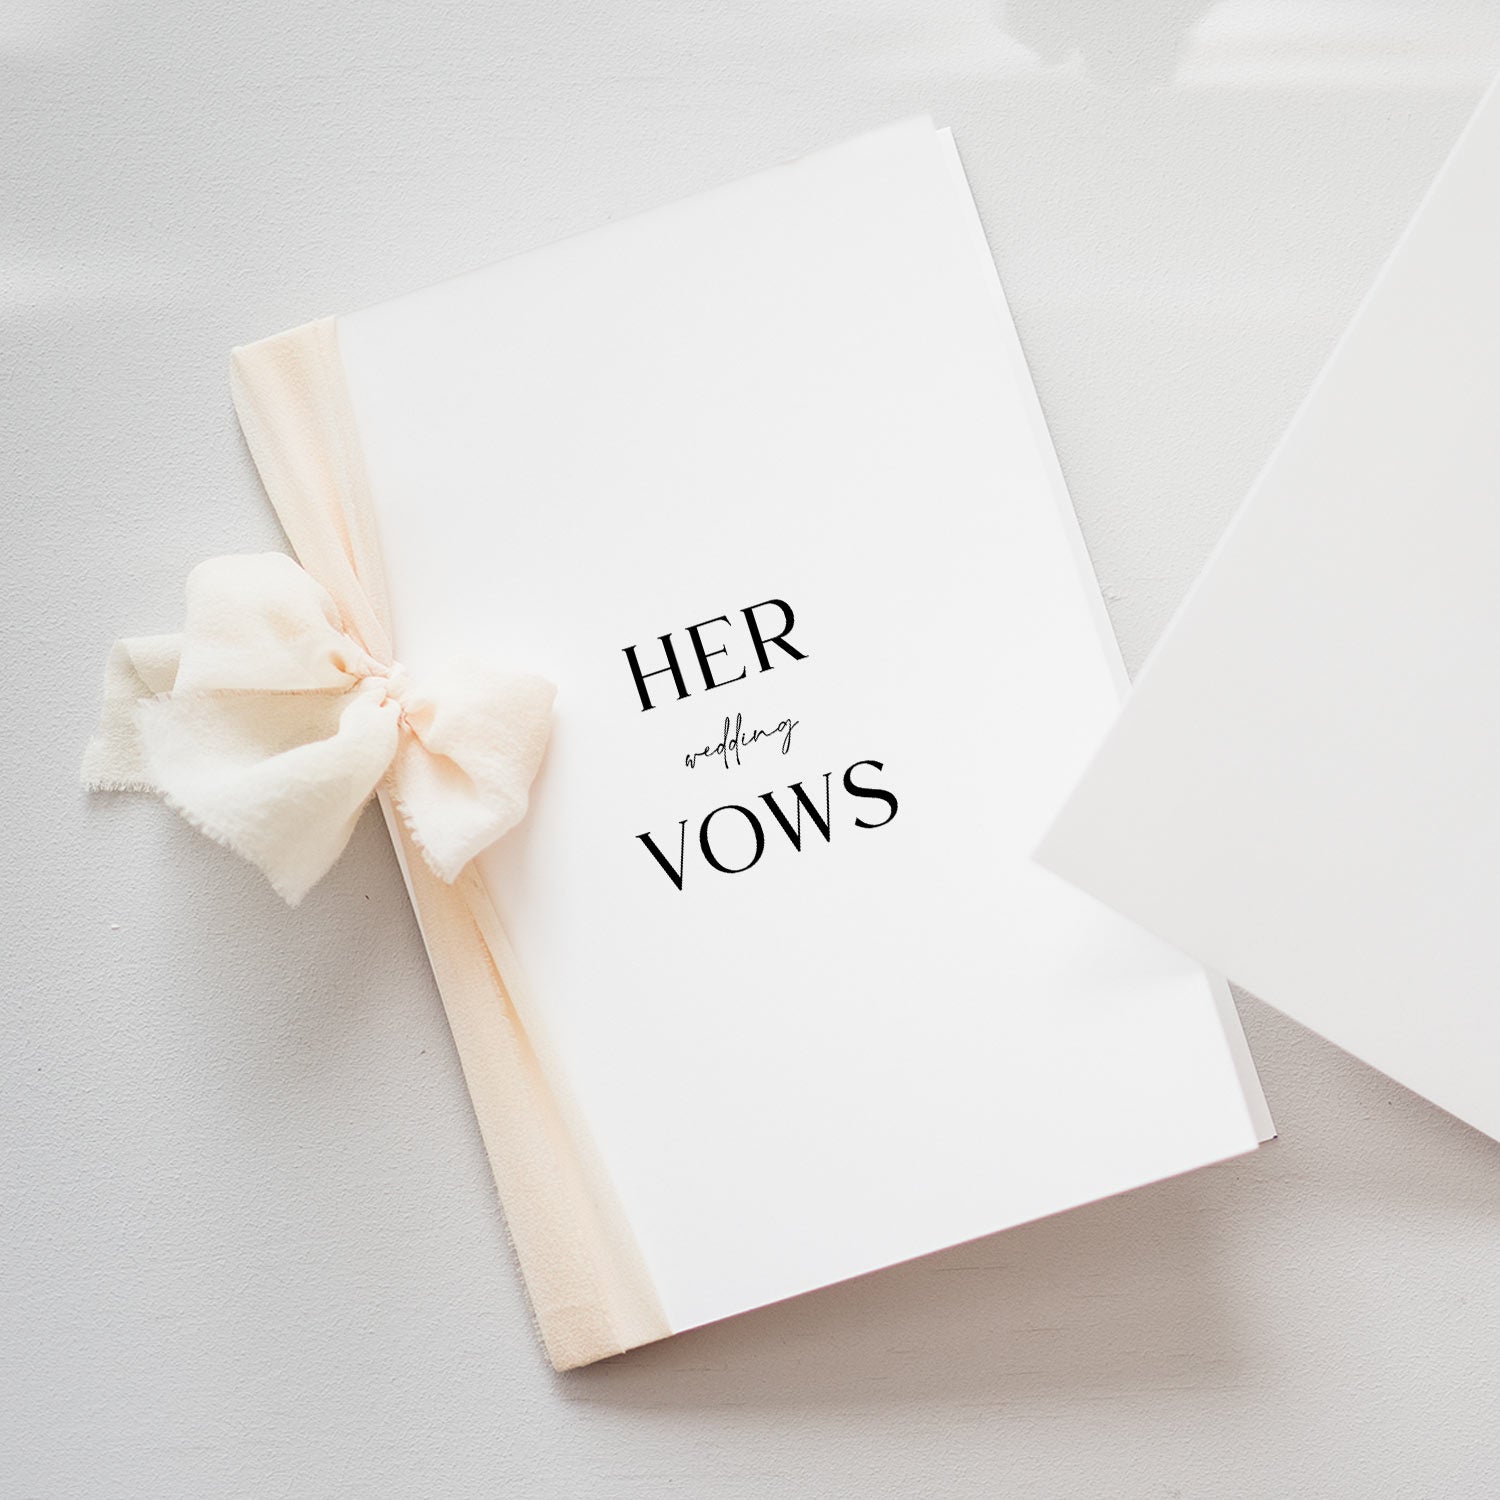 Her Wedding Vows Book, BELOVED